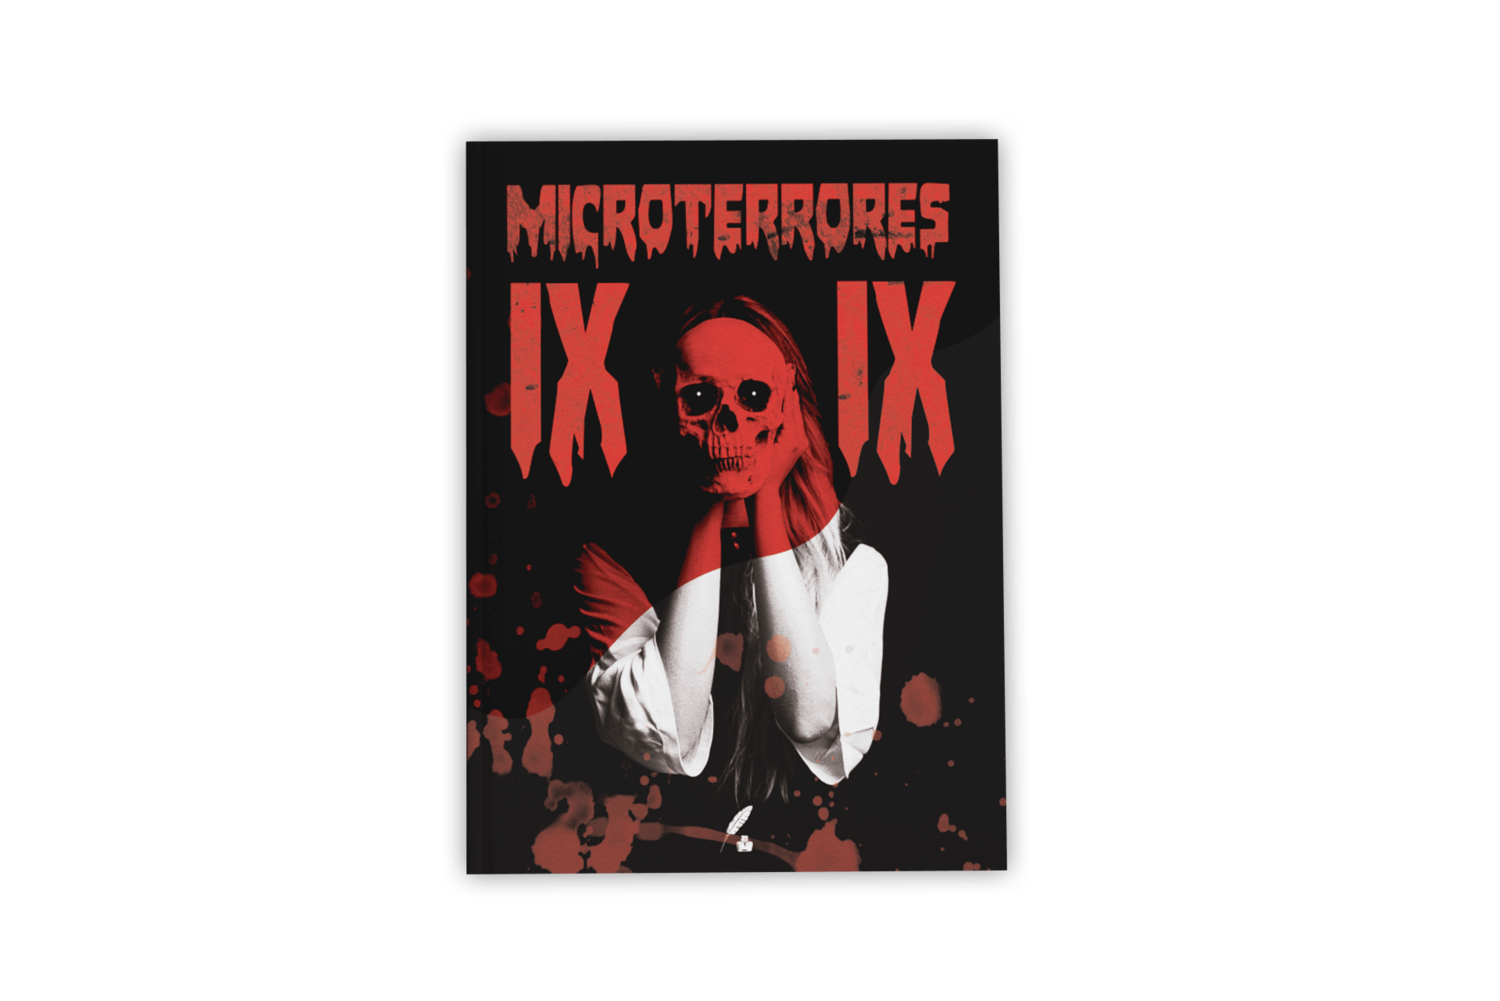 Microterrores IX